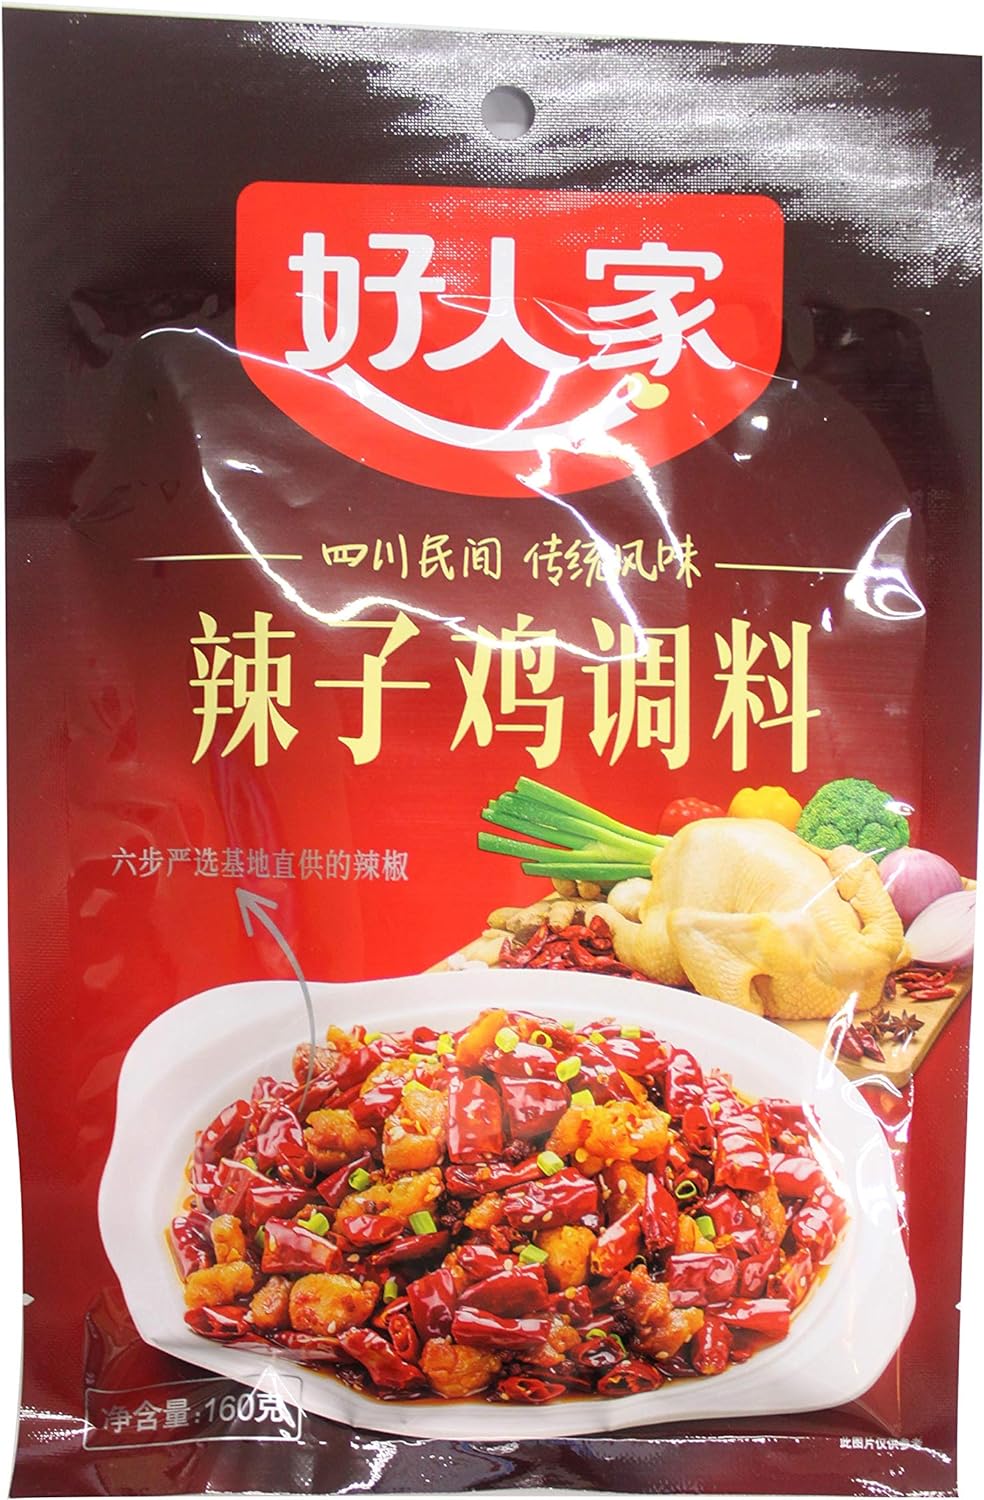 好人家 辣子鶏調料(麻辣鶏揚げ) 160g 調味料 煮込み調味料 中華物産 中国産 食材 中華素材